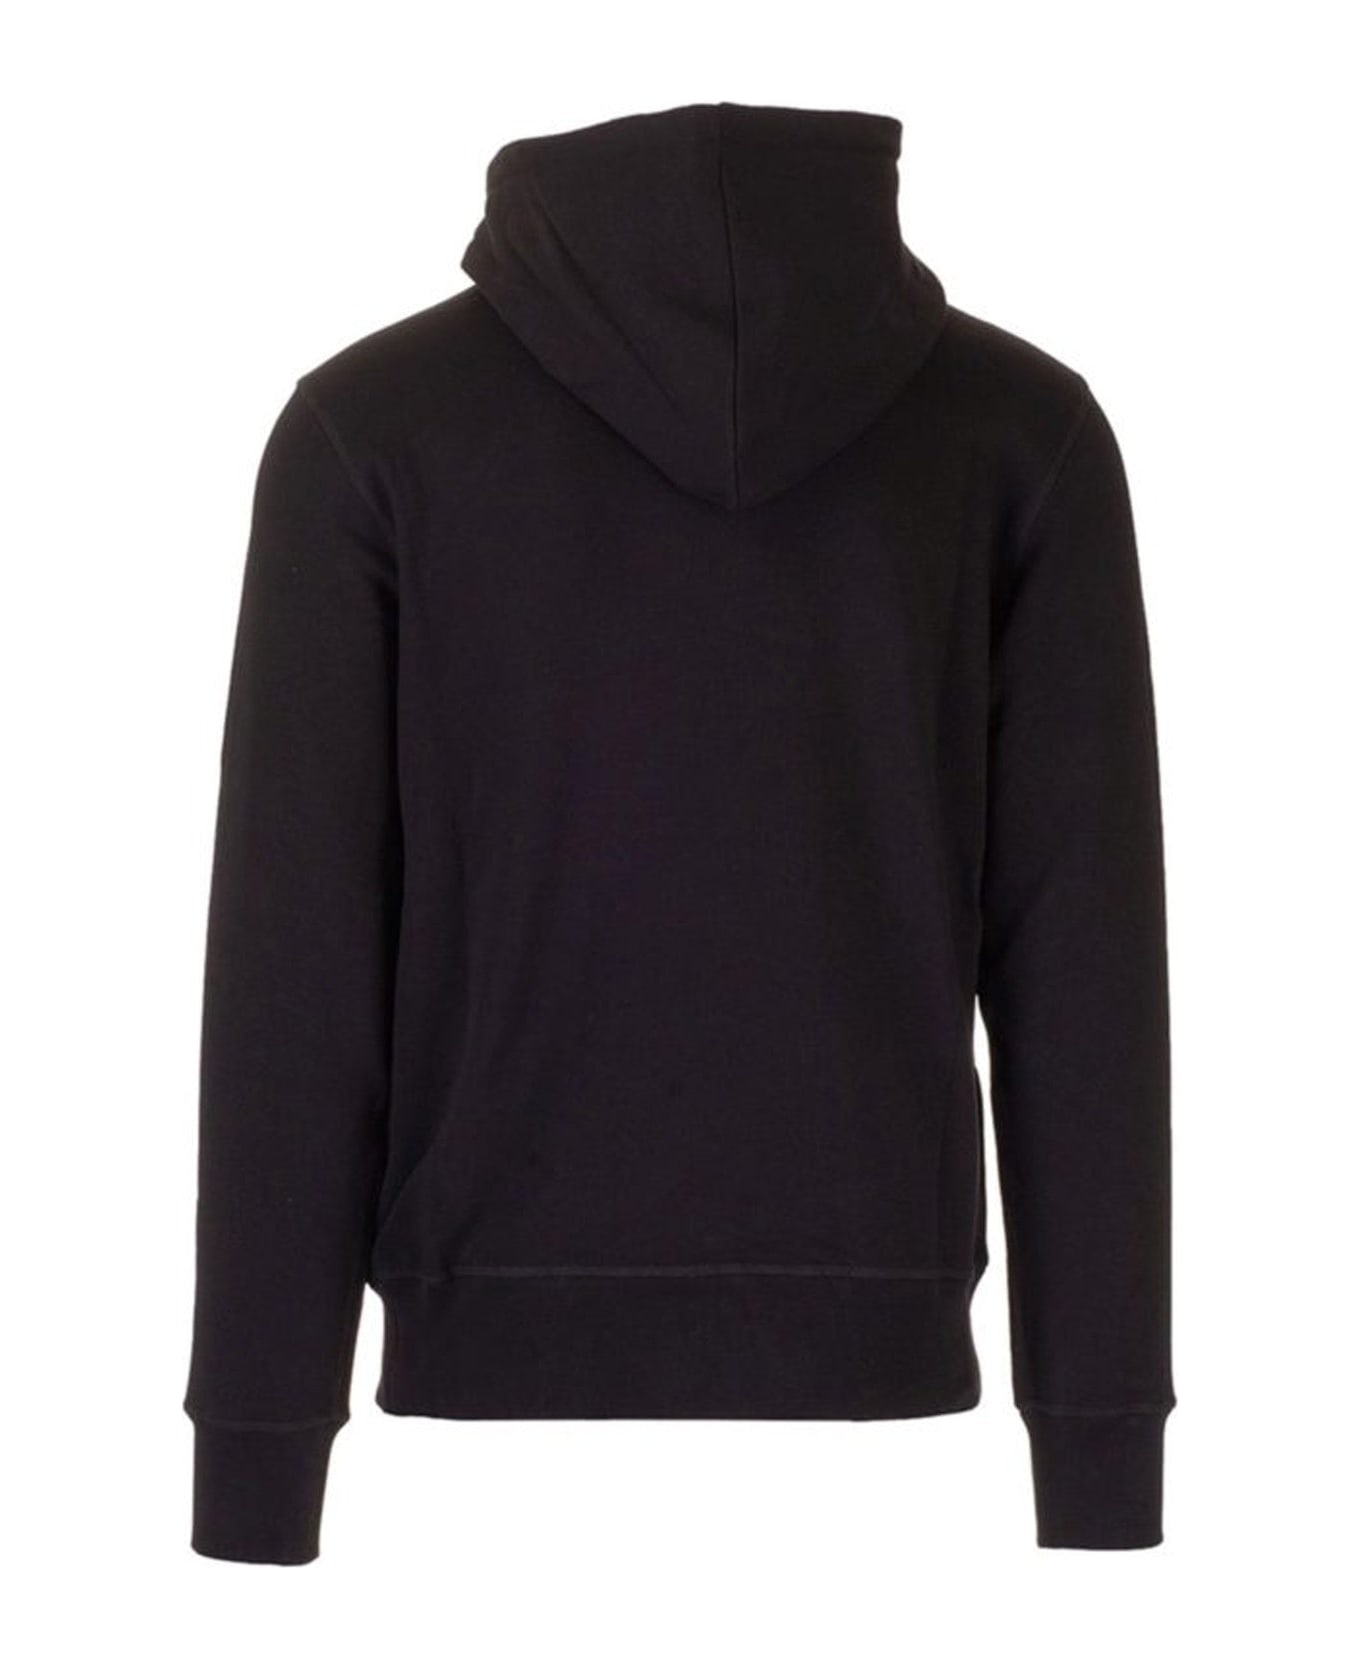 Alexander McQueen Hooded Sweatshirt - Black